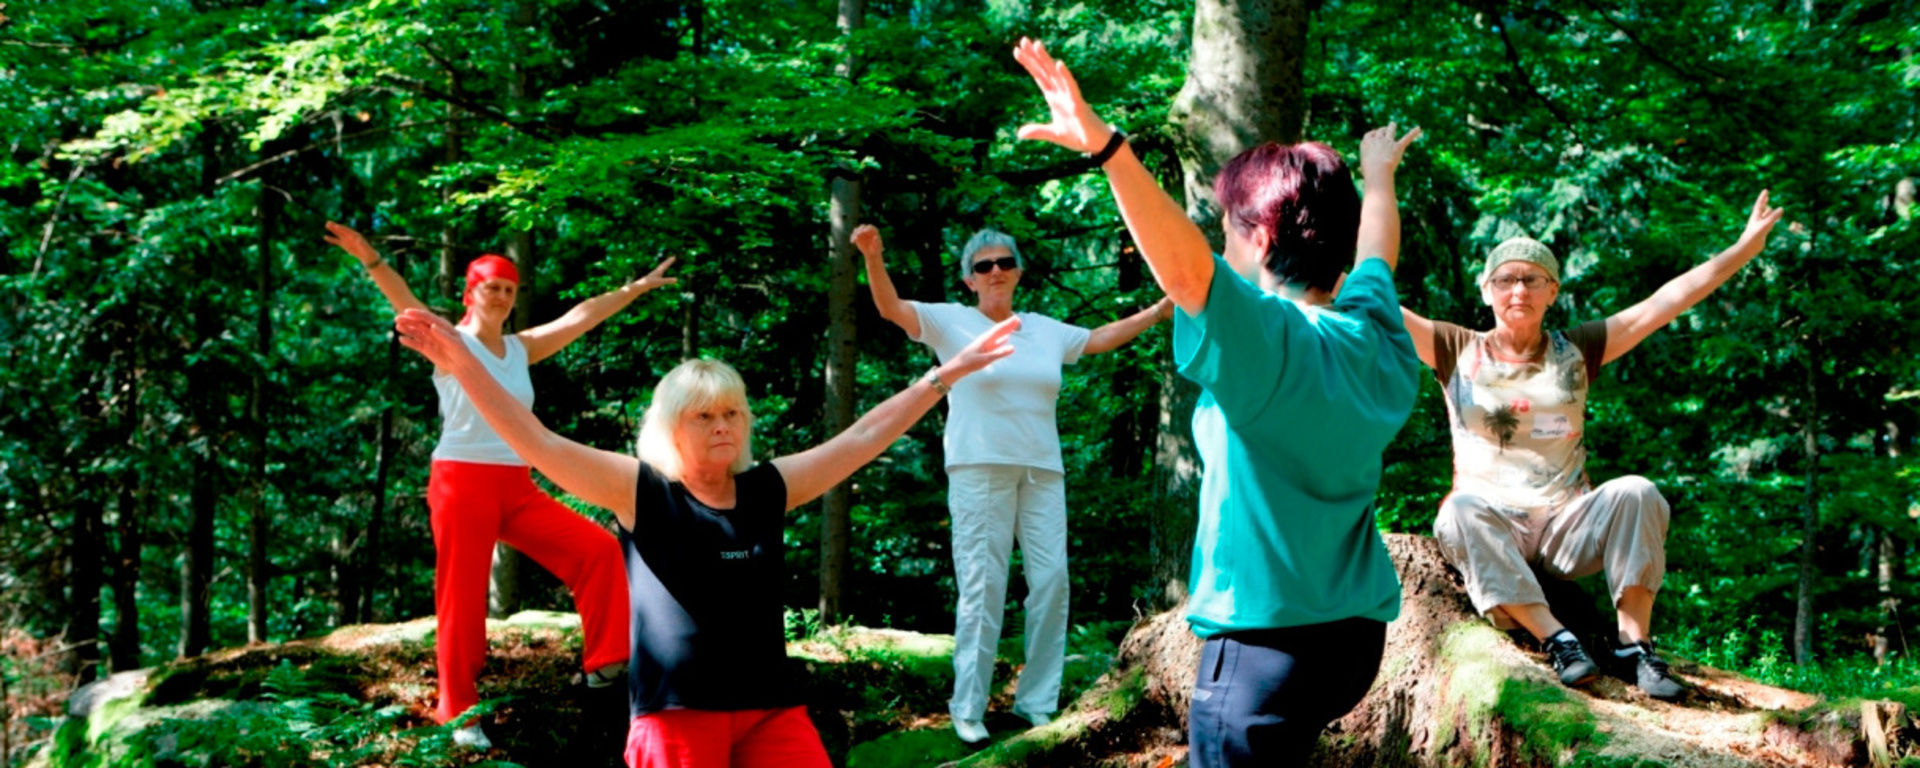 Damen beim Yoga auf großen Steinfelsen im Wald